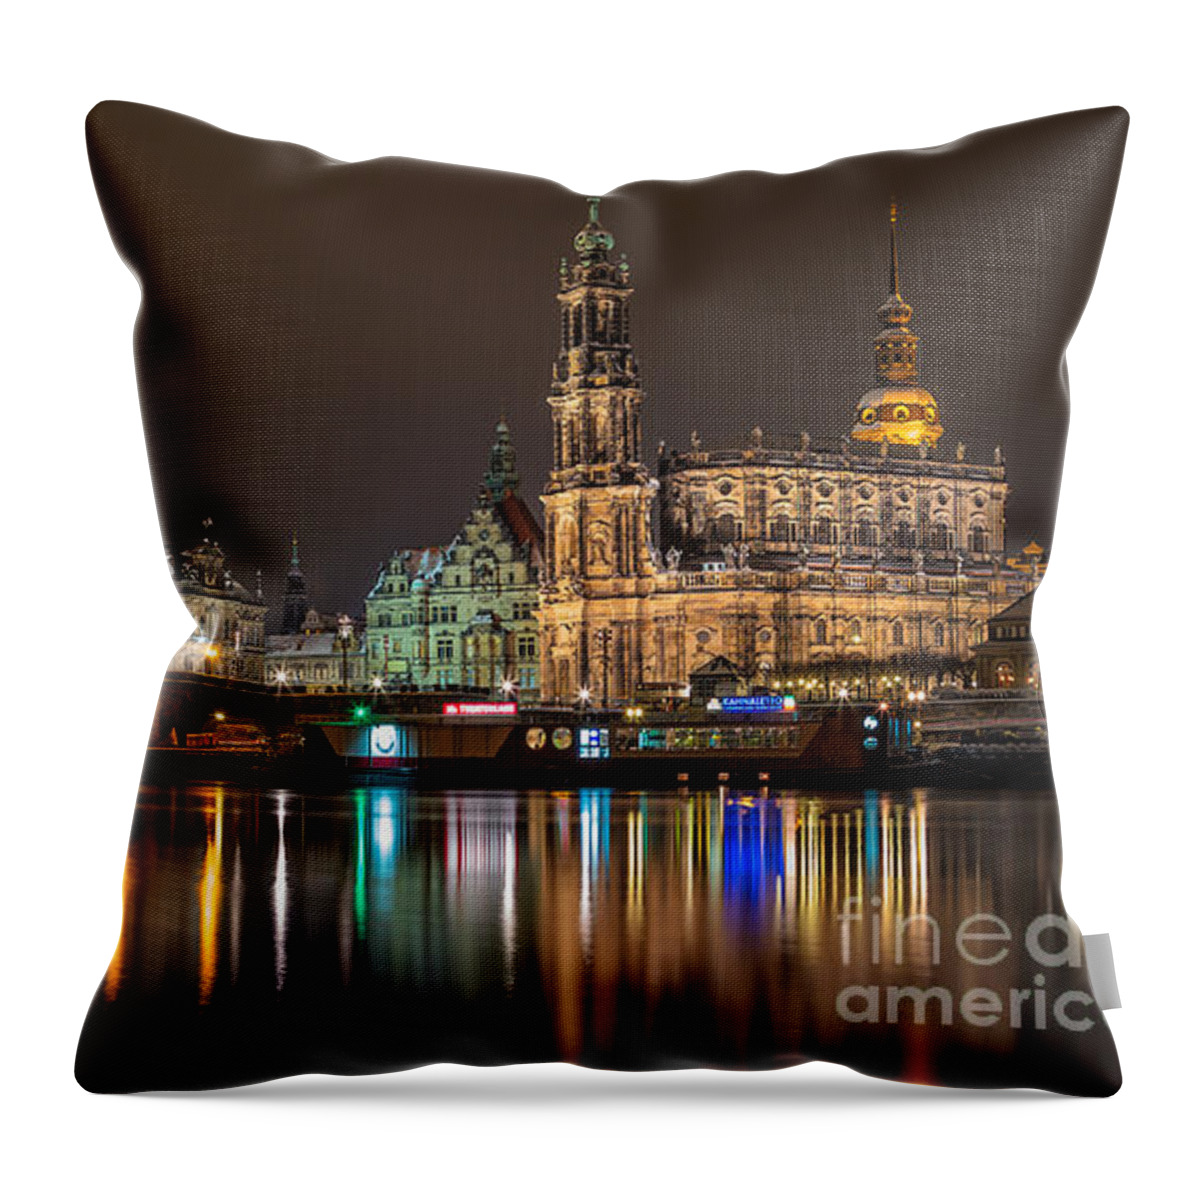 Dresden Throw Pillow featuring the photograph Dresden by Night by Bernd Laeschke